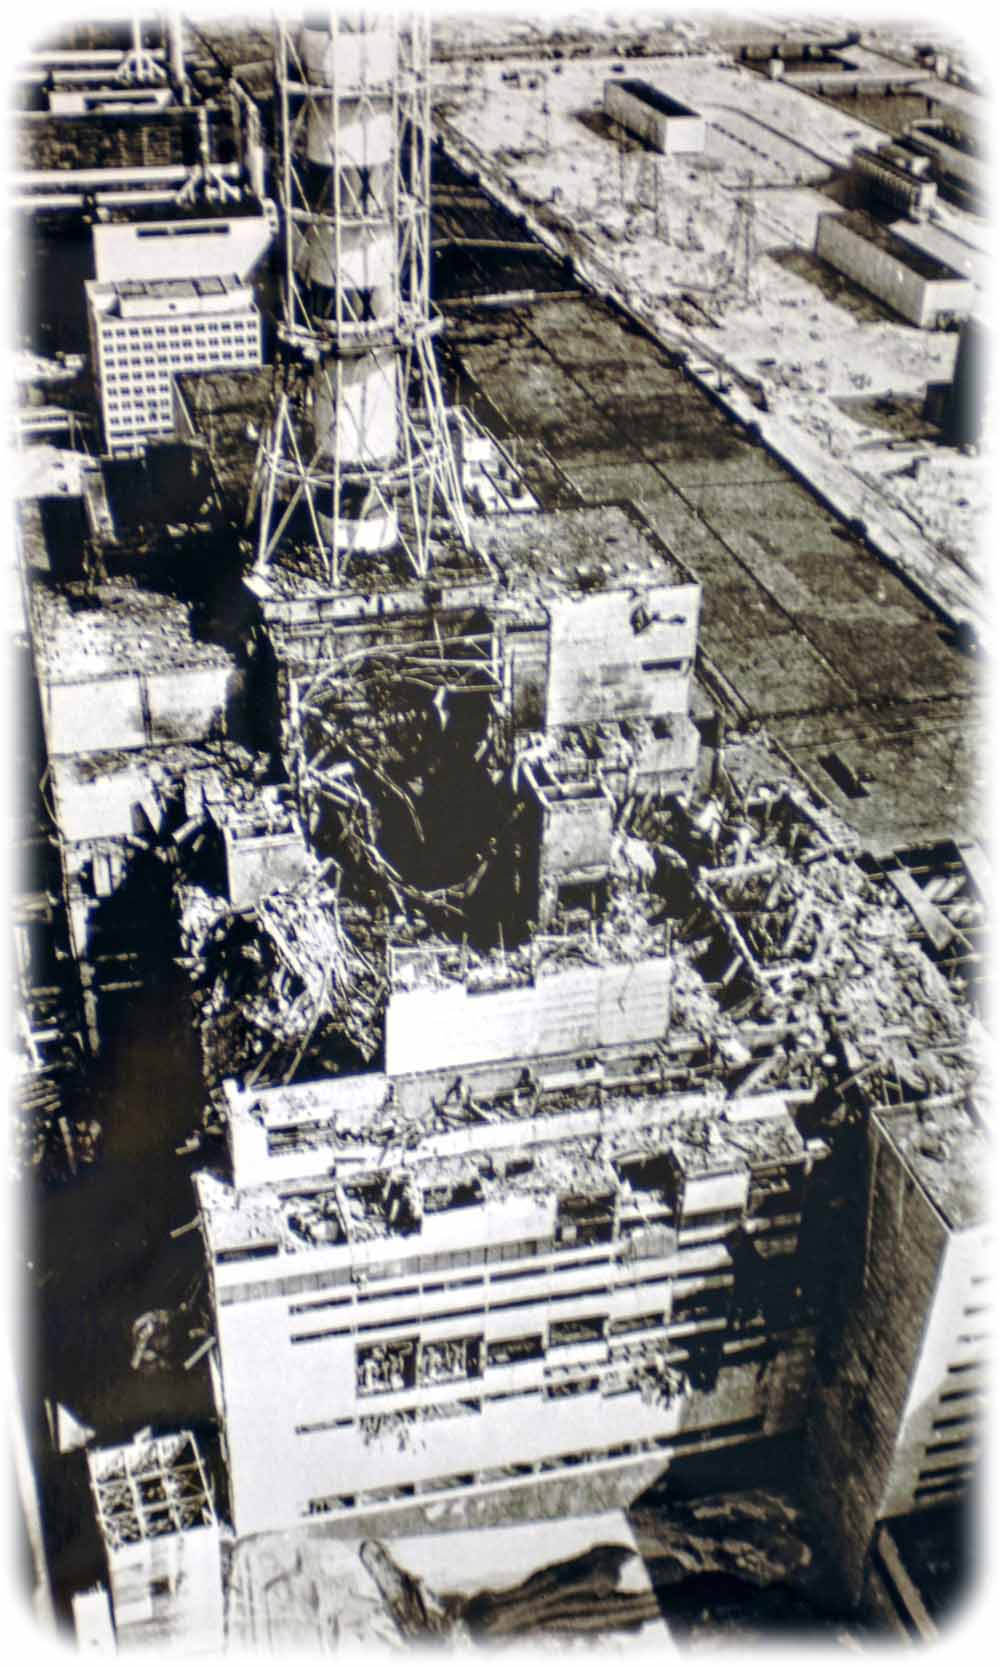 Helikopter-Aufnahme vom zerstörten Kernkraftwerk Tschernobyl, aufgenommen einen Tag nach der Katastrophe. Foto: USFCRFC via Wikimedia; CC2-Lizenz; creativecommons.org/licenses/by-sa/2.0/deed.de